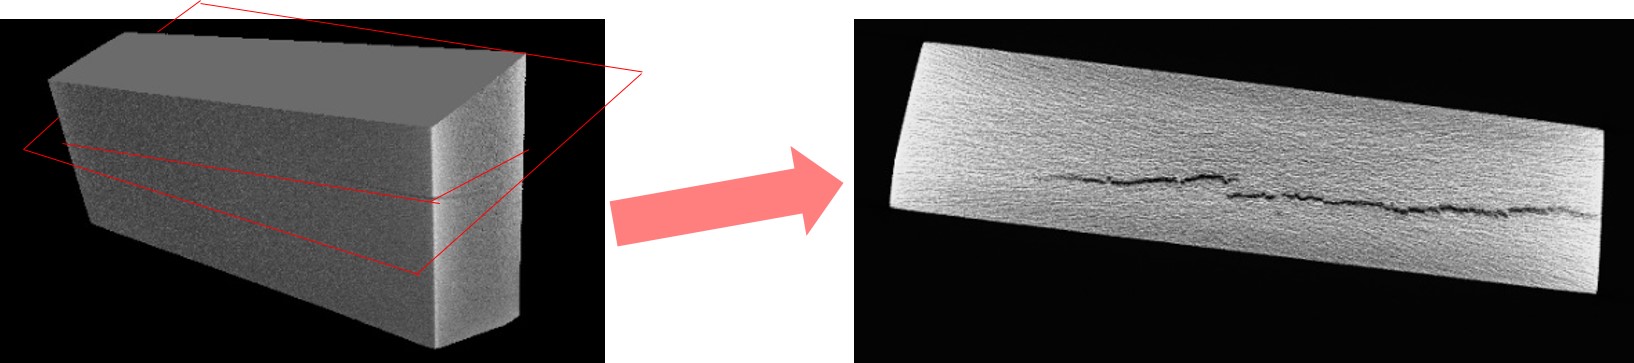 An illustration of fissures in aluminium.